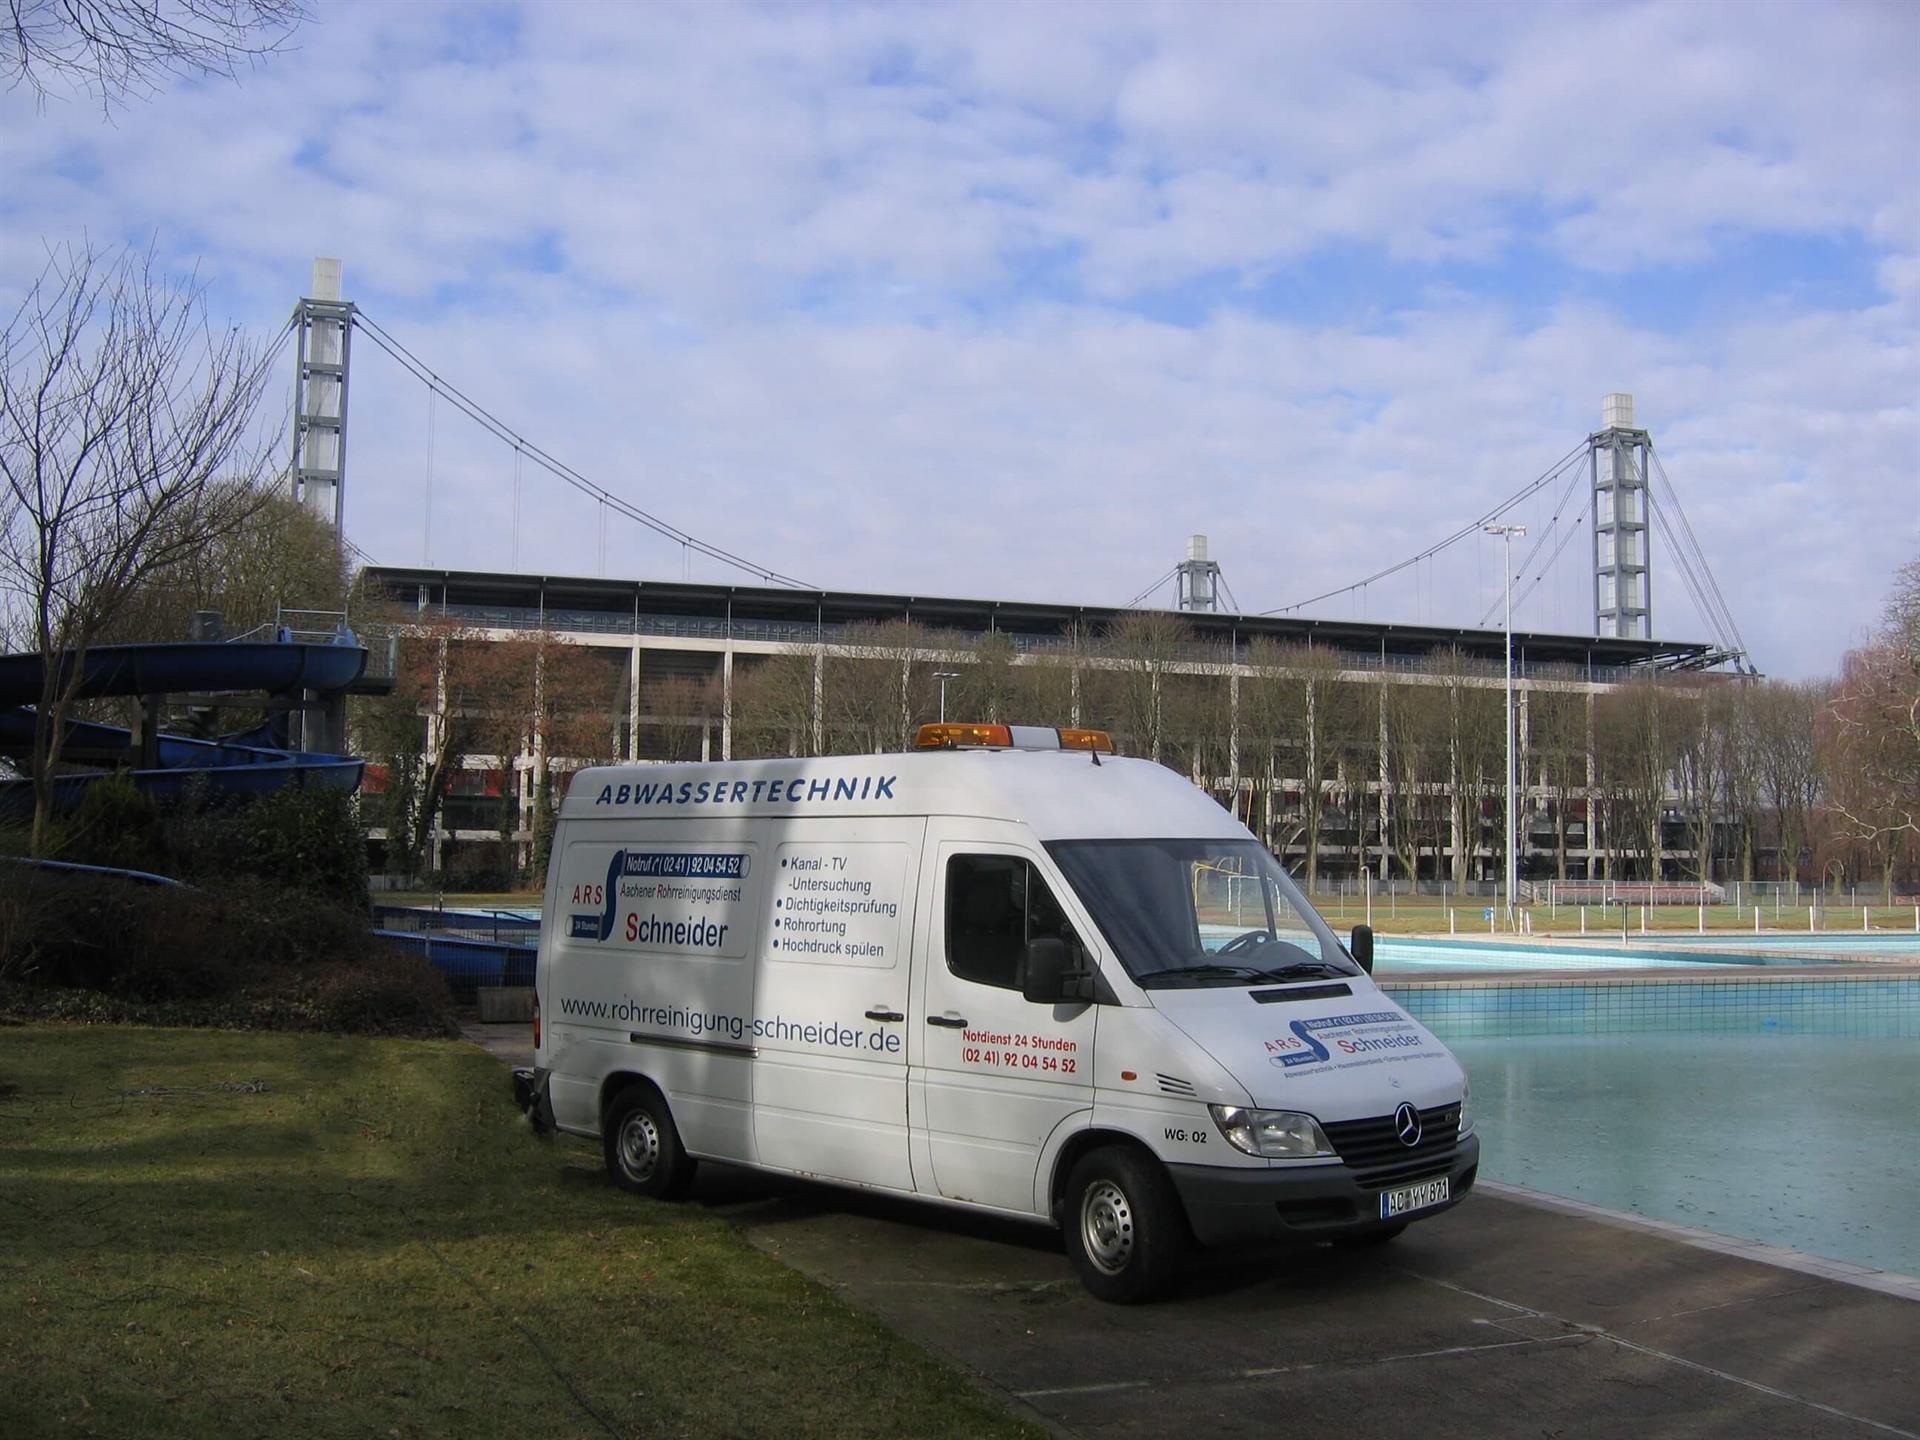 Fahrzeug Abwassertechnik vor Schwimmbad